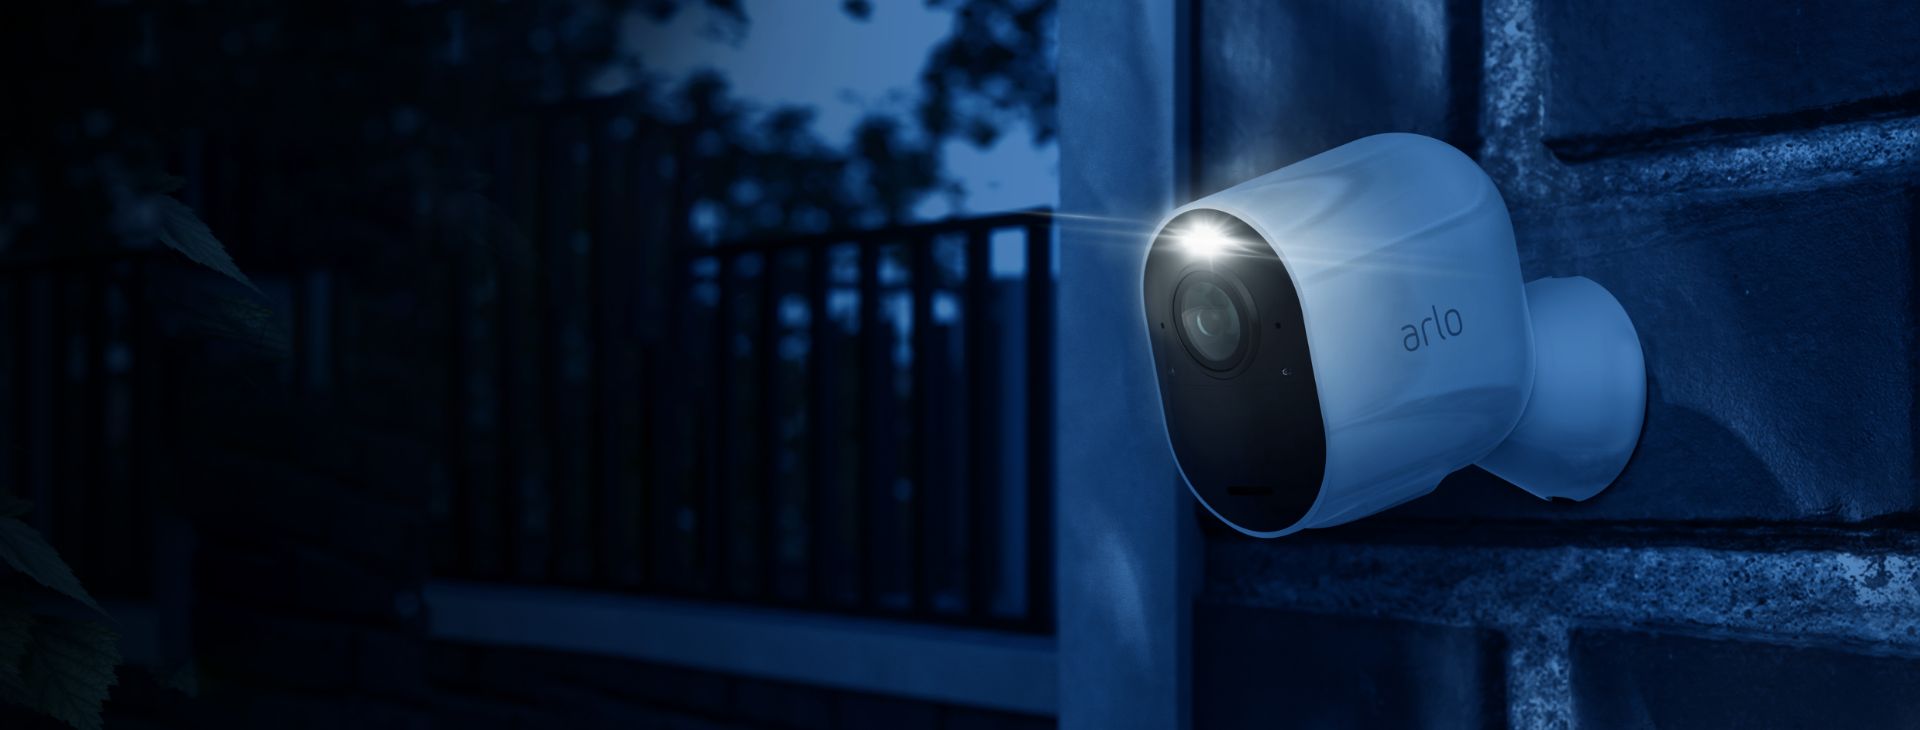 La caméra de surveillance Arlo Ultra accrochée contre un mur qui filme dans la nuit avec son projecteur intégré.